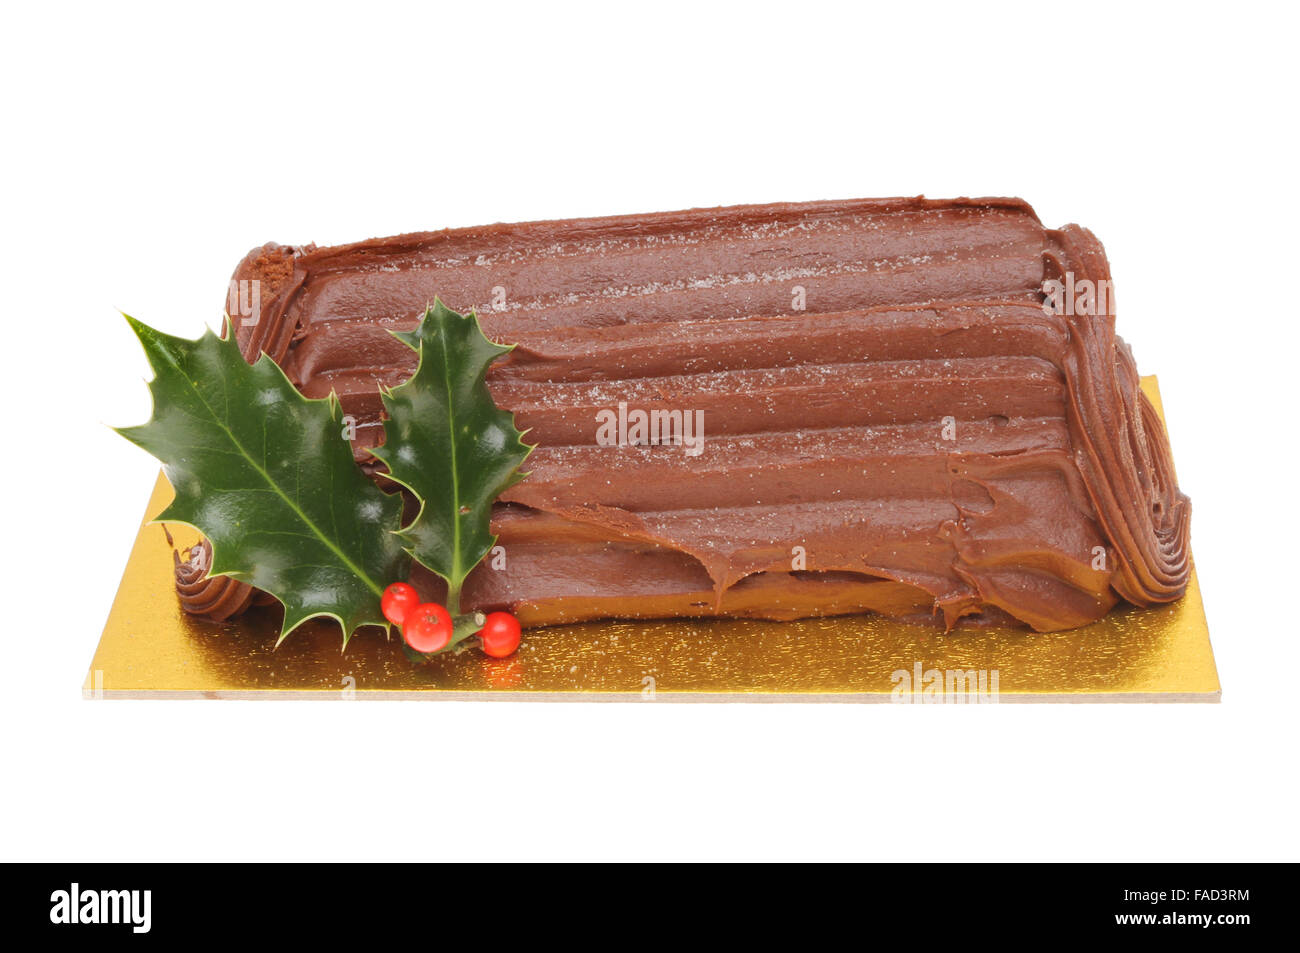 Yule log de chocolate decorada con una ramita de acebo aislado contra un blanco Foto de stock